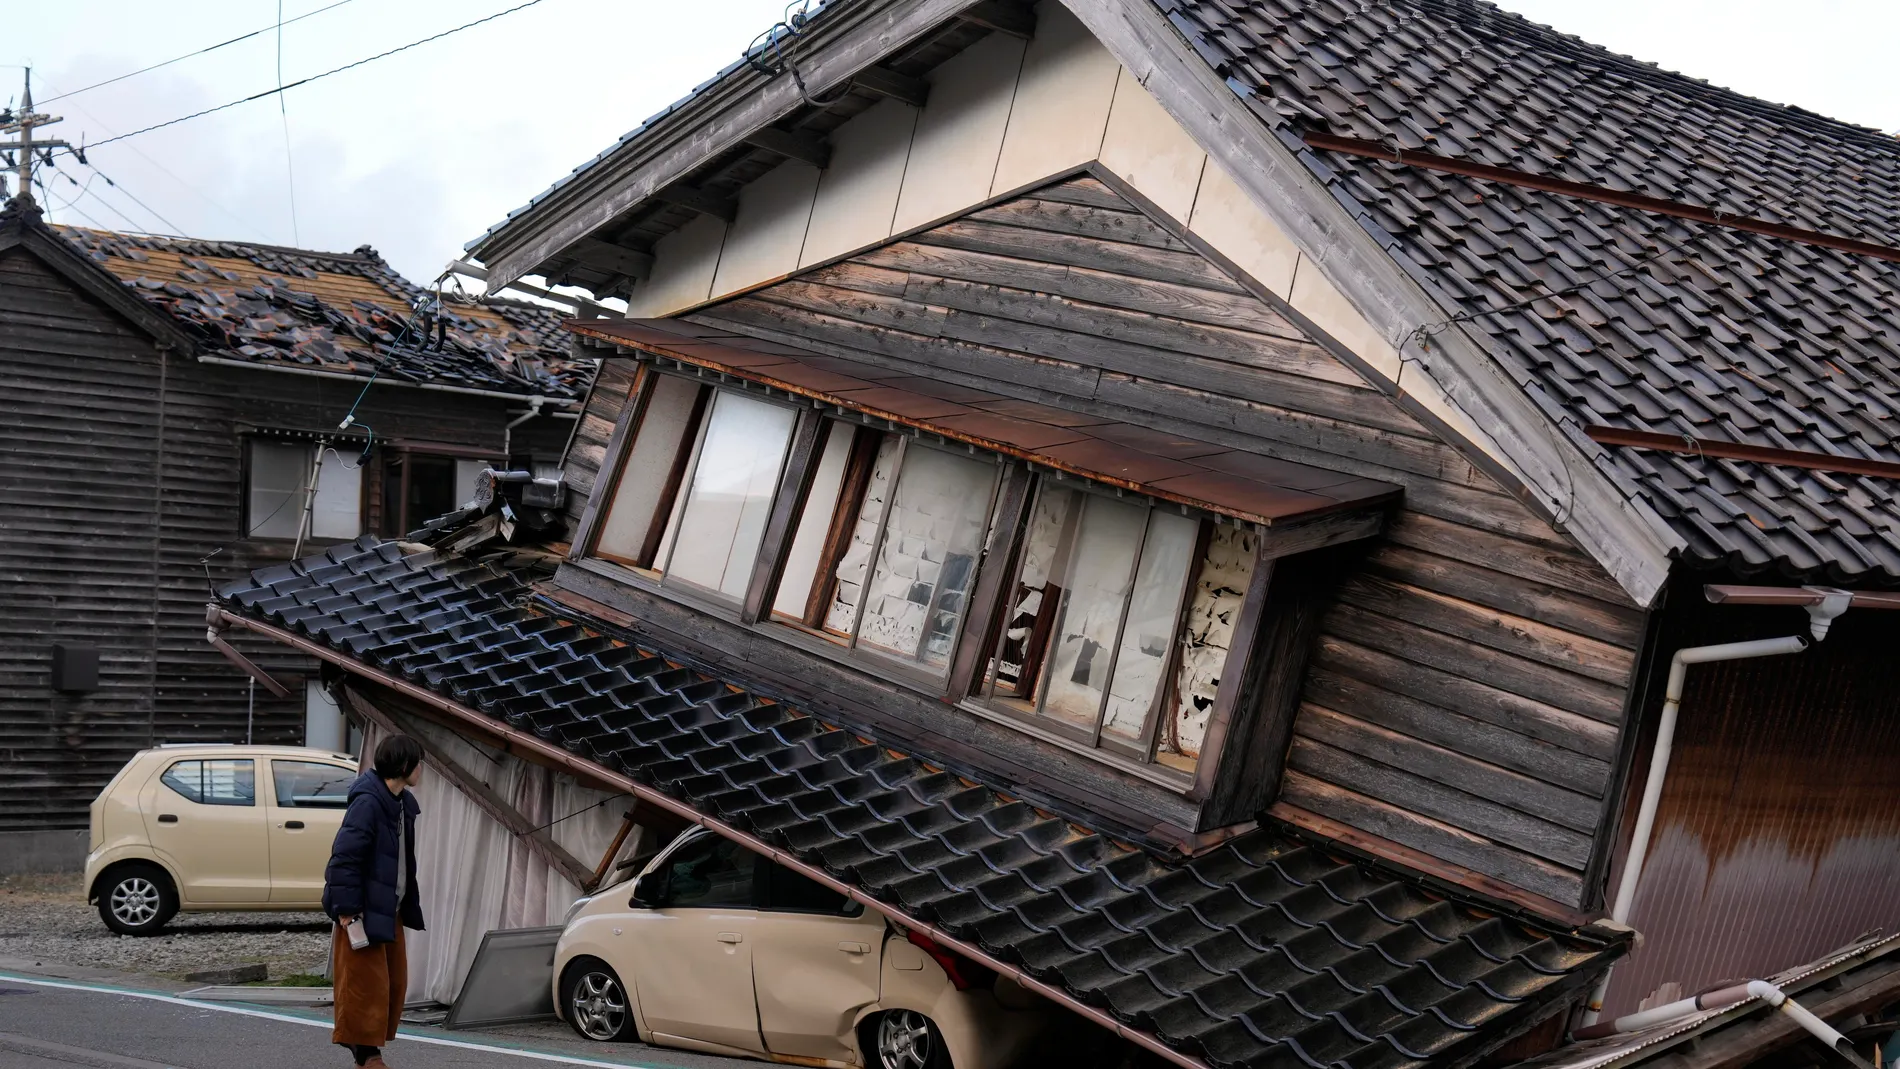 -FOTODELDIA- TOGI TOWN (Japón), 02/01/2024.- Una mujer observa una vivienda y vehículos dañados tras un fuerte terremoto en Tohi Town, en la península de Noto, Japón, este 02 de enero de 2024. Las víctimas del terremoto de 7,6 grados que golpeó el litoral occidental de Japón ascienden ya a 30, mientras se subraya la dificultad de los equipos de rescate y fuerzas de seguridad para acceder a las zonas más afectadas por el seísmo. EFE/FRANCK ROBICHON 